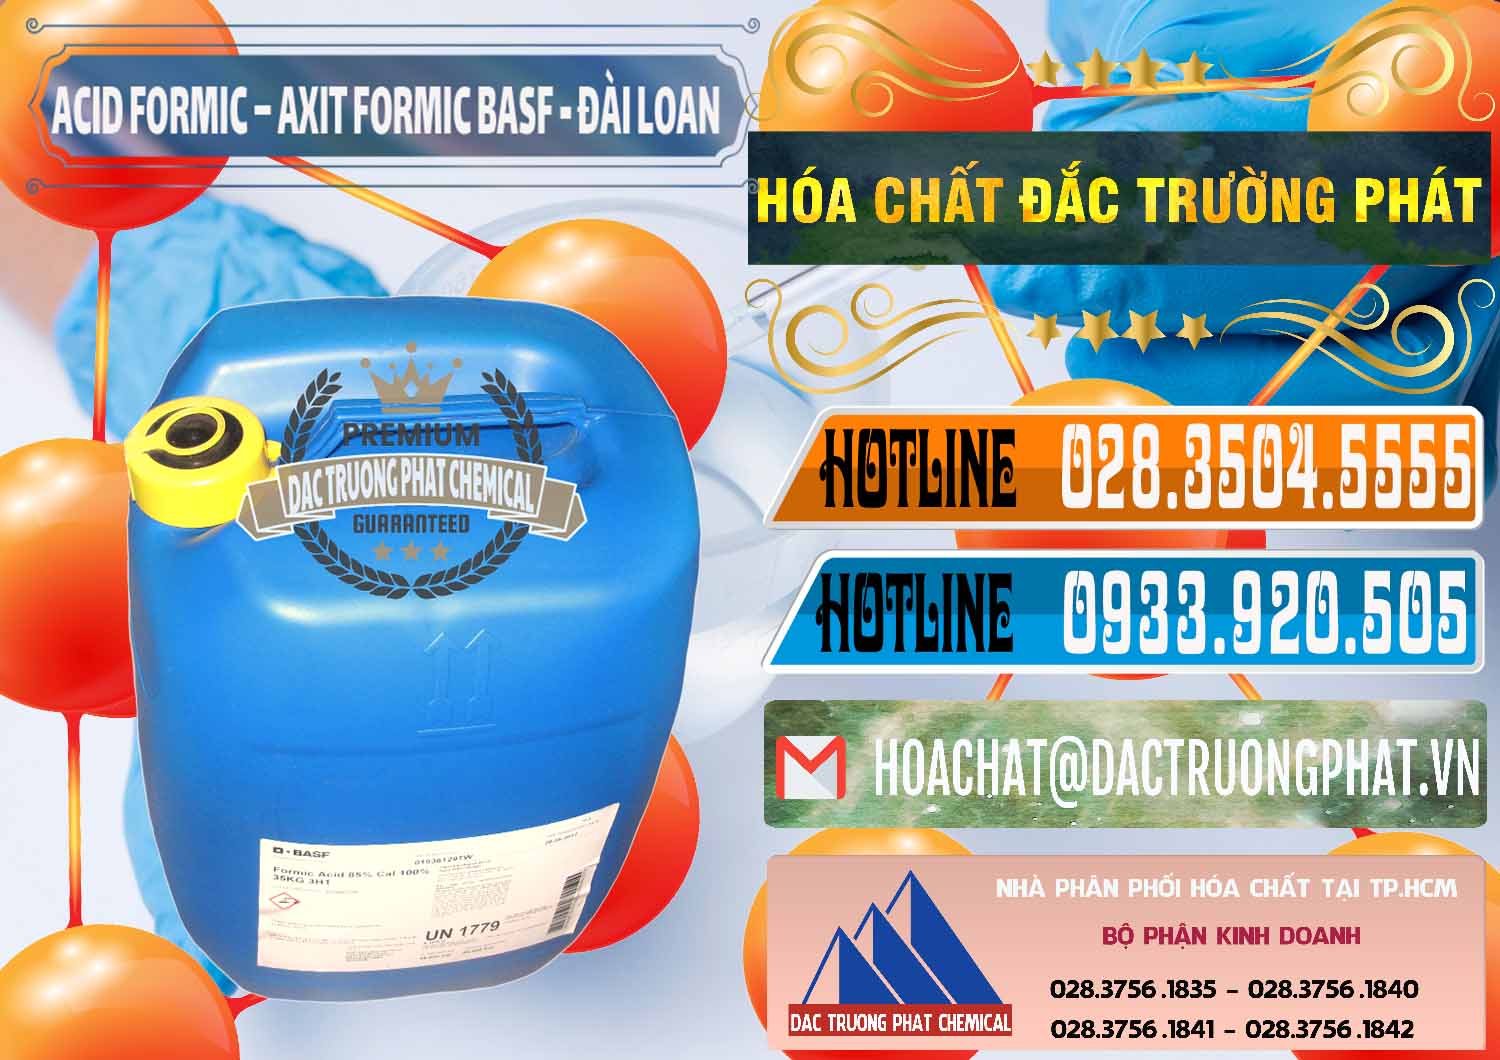 Nơi chuyên bán & phân phối Acid Formic - Axit Formic 85% BASF Đài Loan Taiwan - 0027 - Cty cung cấp và nhập khẩu hóa chất tại TP.HCM - stmp.net